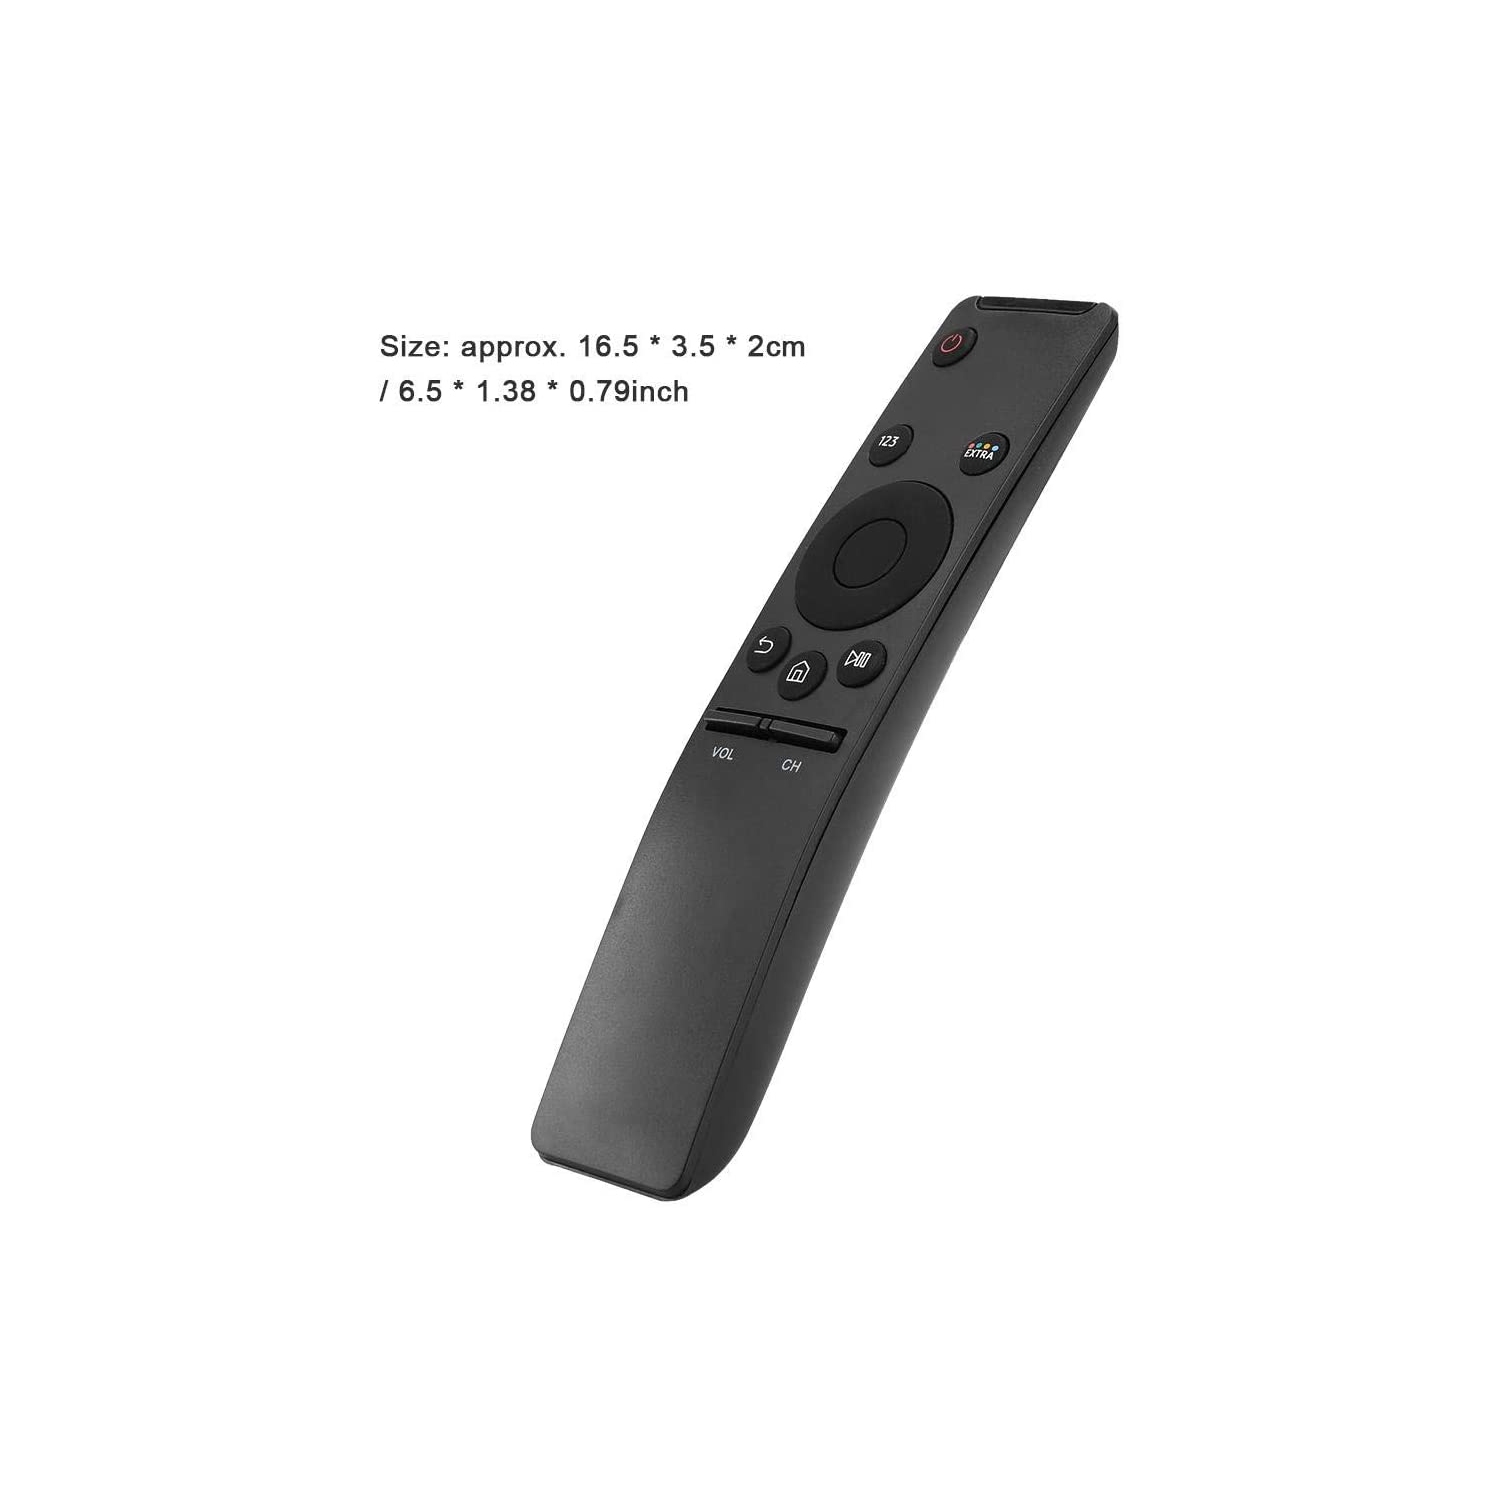 TV Remote Control Replacement for Samsung BN59-01259E TM1640 BN59-01259B BN59-01259D BN59-01260A BN59-01265A